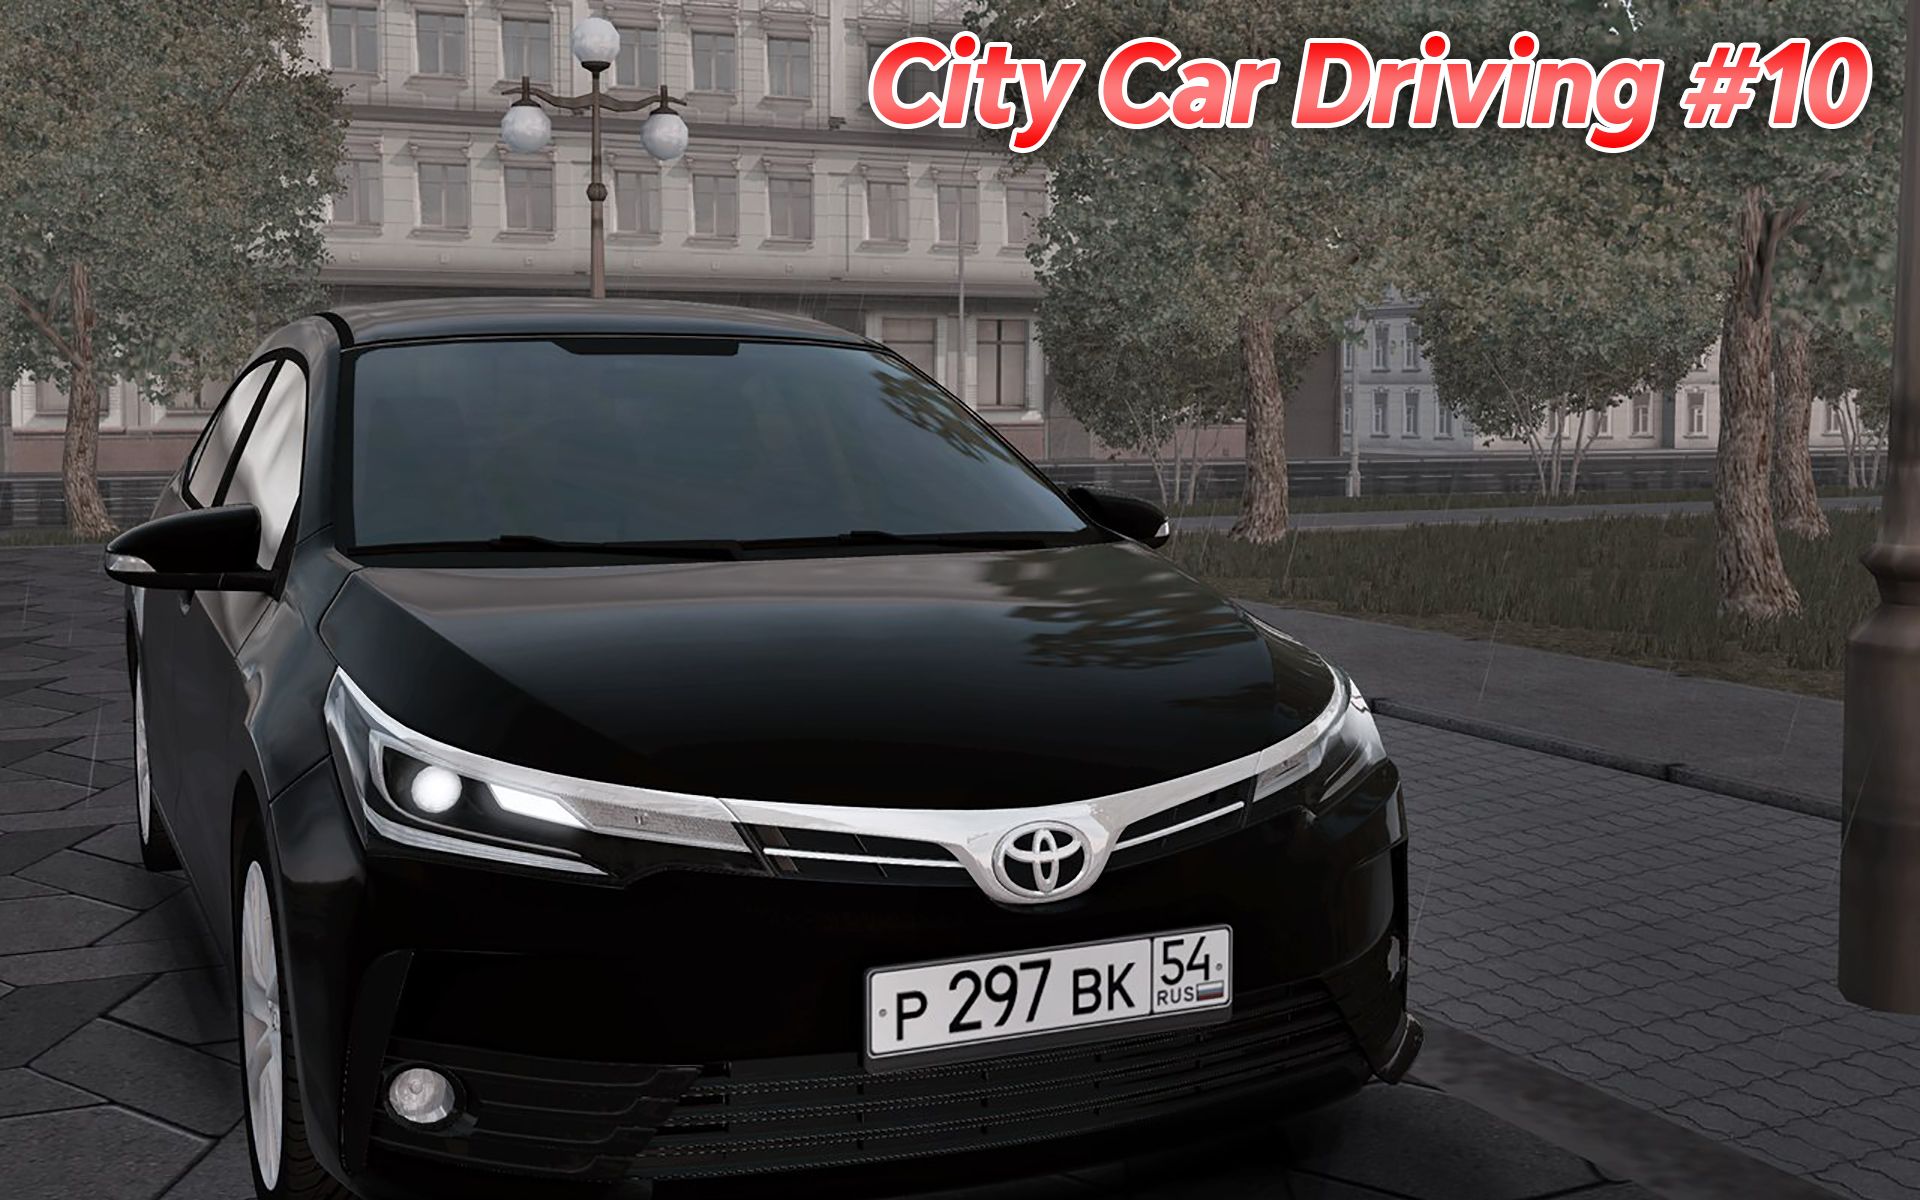 城市汽车驾驶 #10：2017款丰田卡罗拉 | City Car Driving